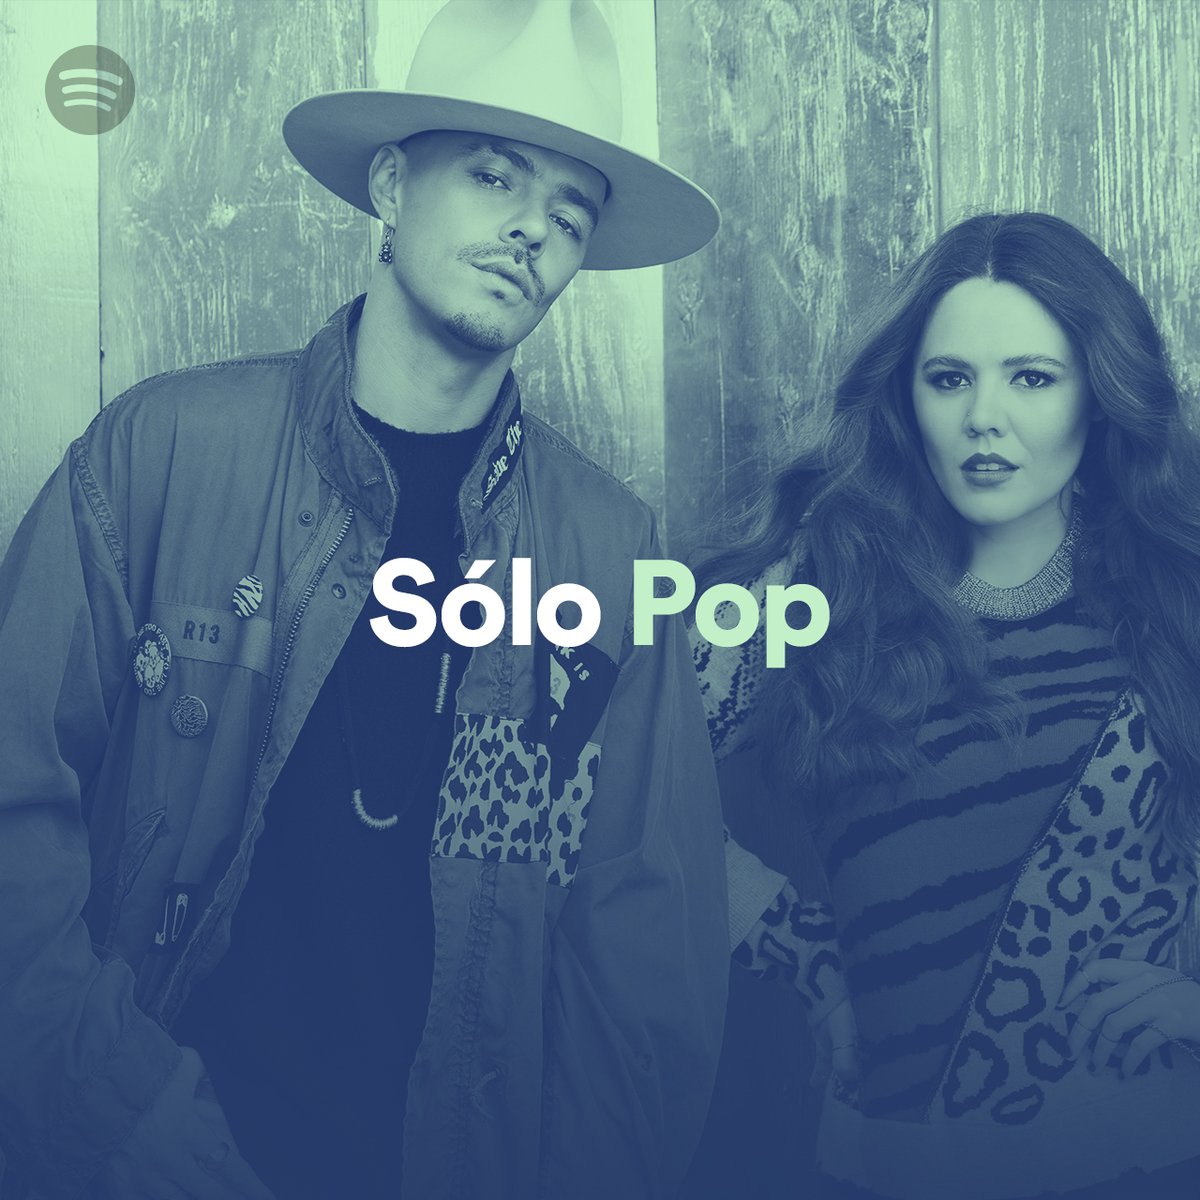 Gracias @SpotifyMexico por la portada de #SoloPop ❤️❤️ Ve y escucha #AlguienMás en la playlist #SoloPop ✨💨 open.spotify.com/playlist/37i9d…